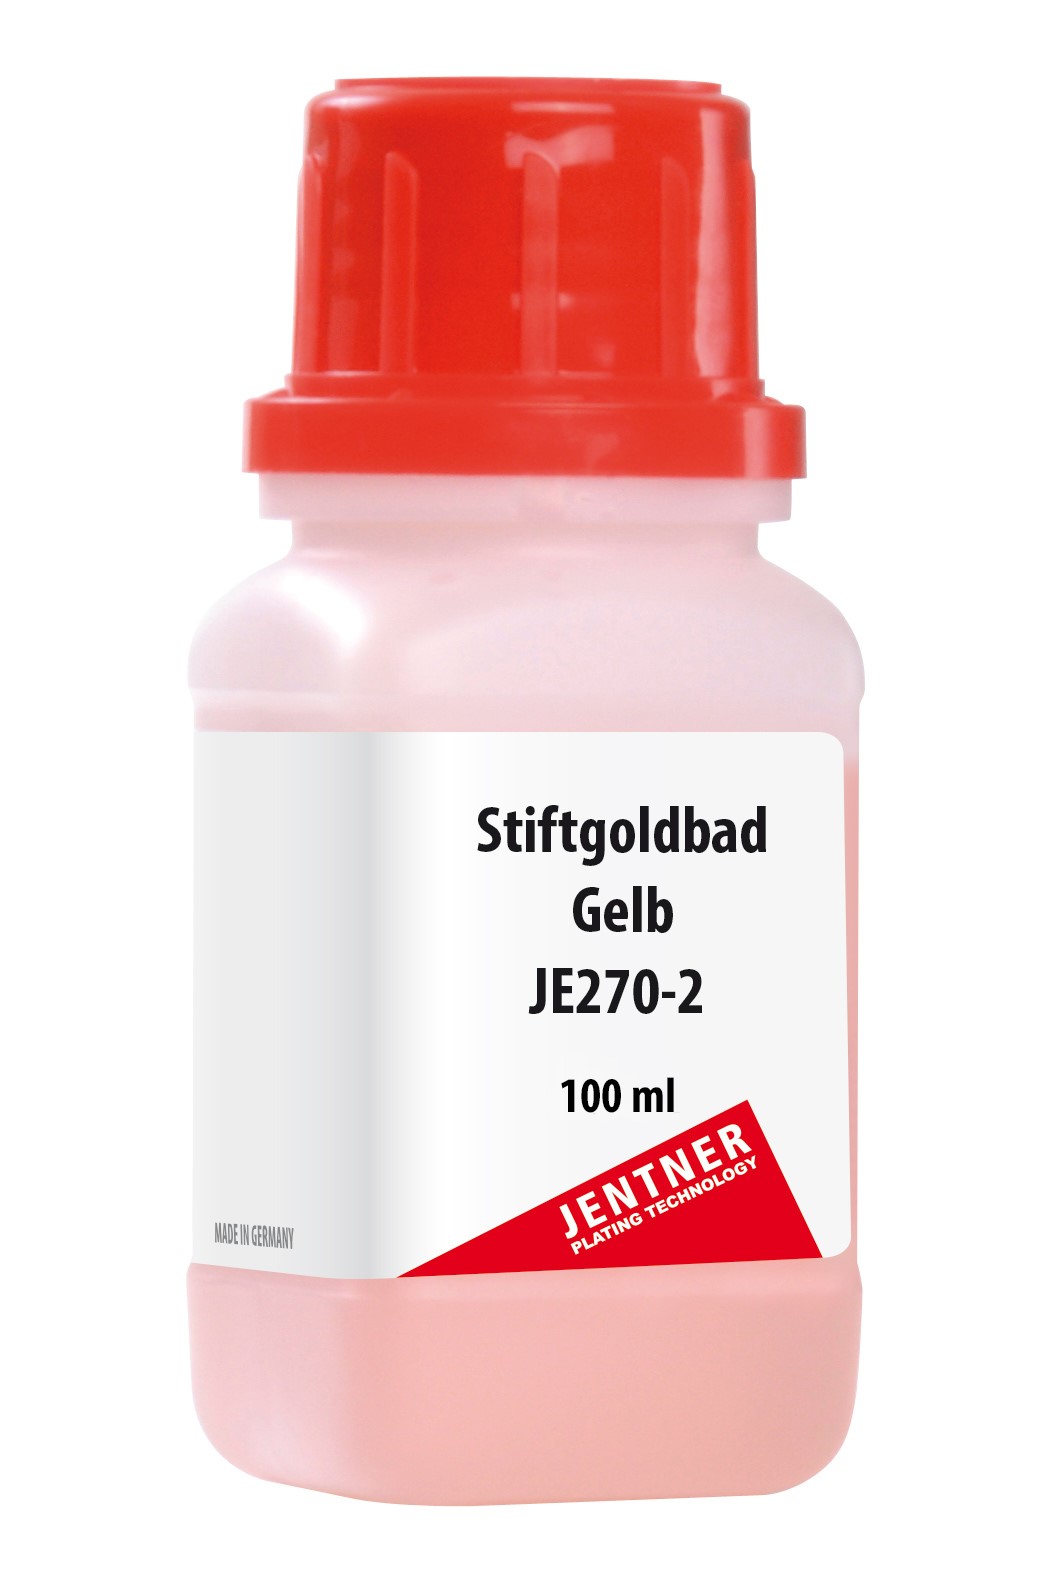 Stiftgoldbad gelb JE270-2 (2 g/100ml)